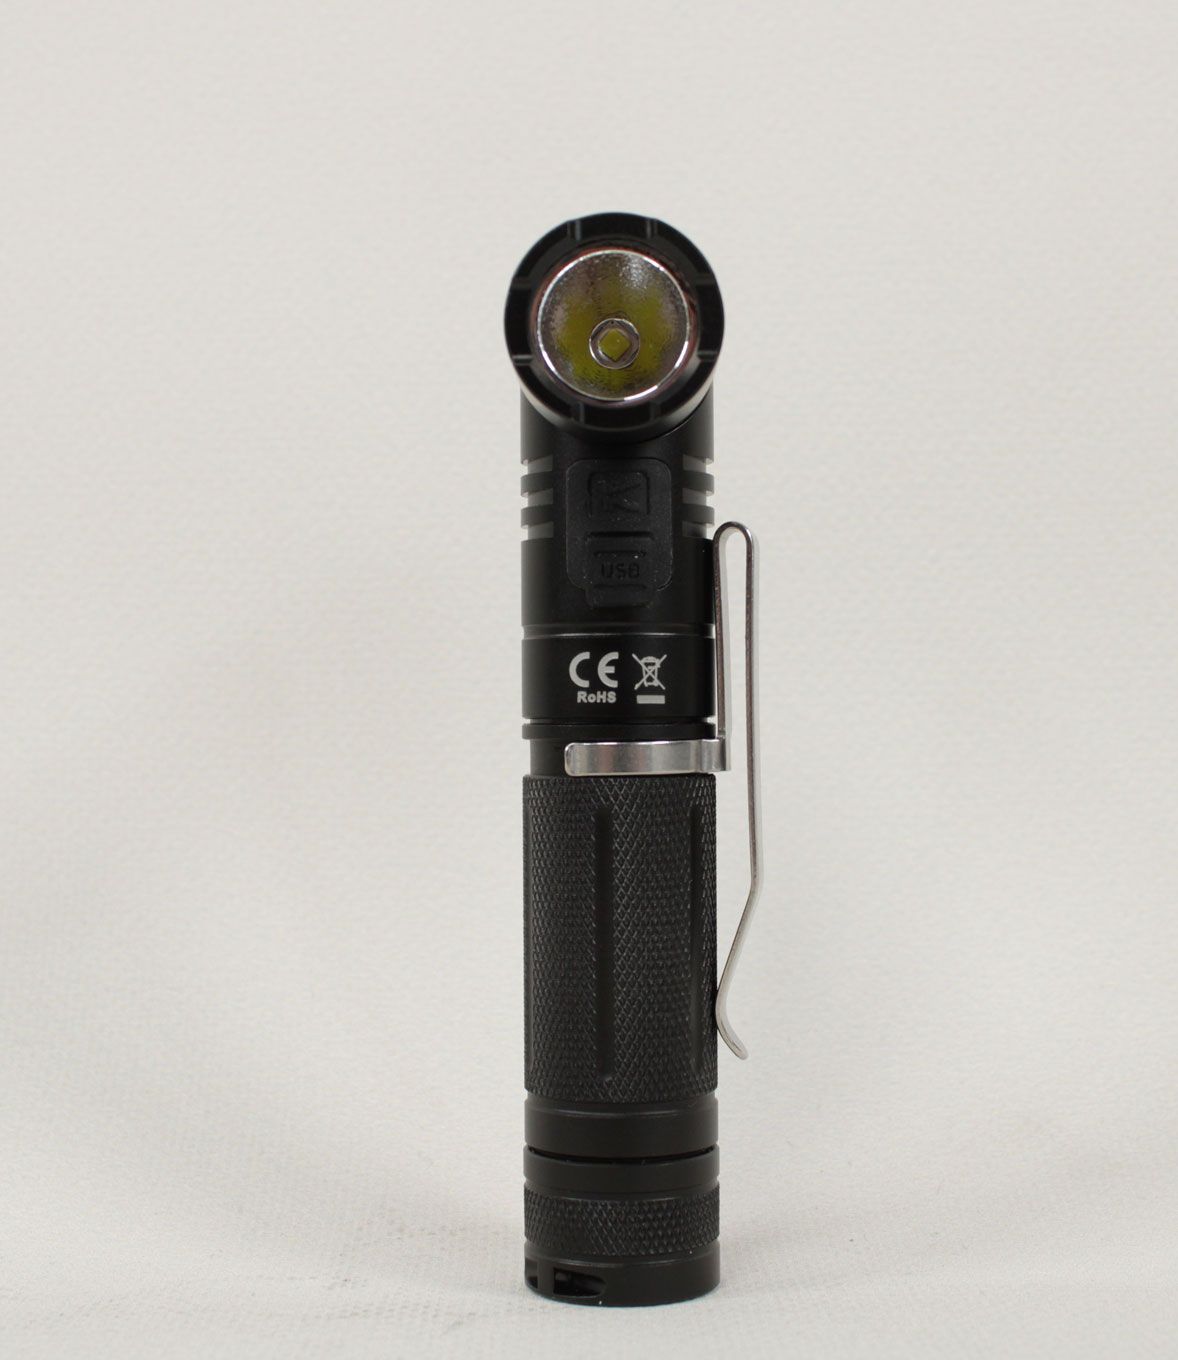 Lampe Klarus 1080 lumens, rechargeable et orientable.